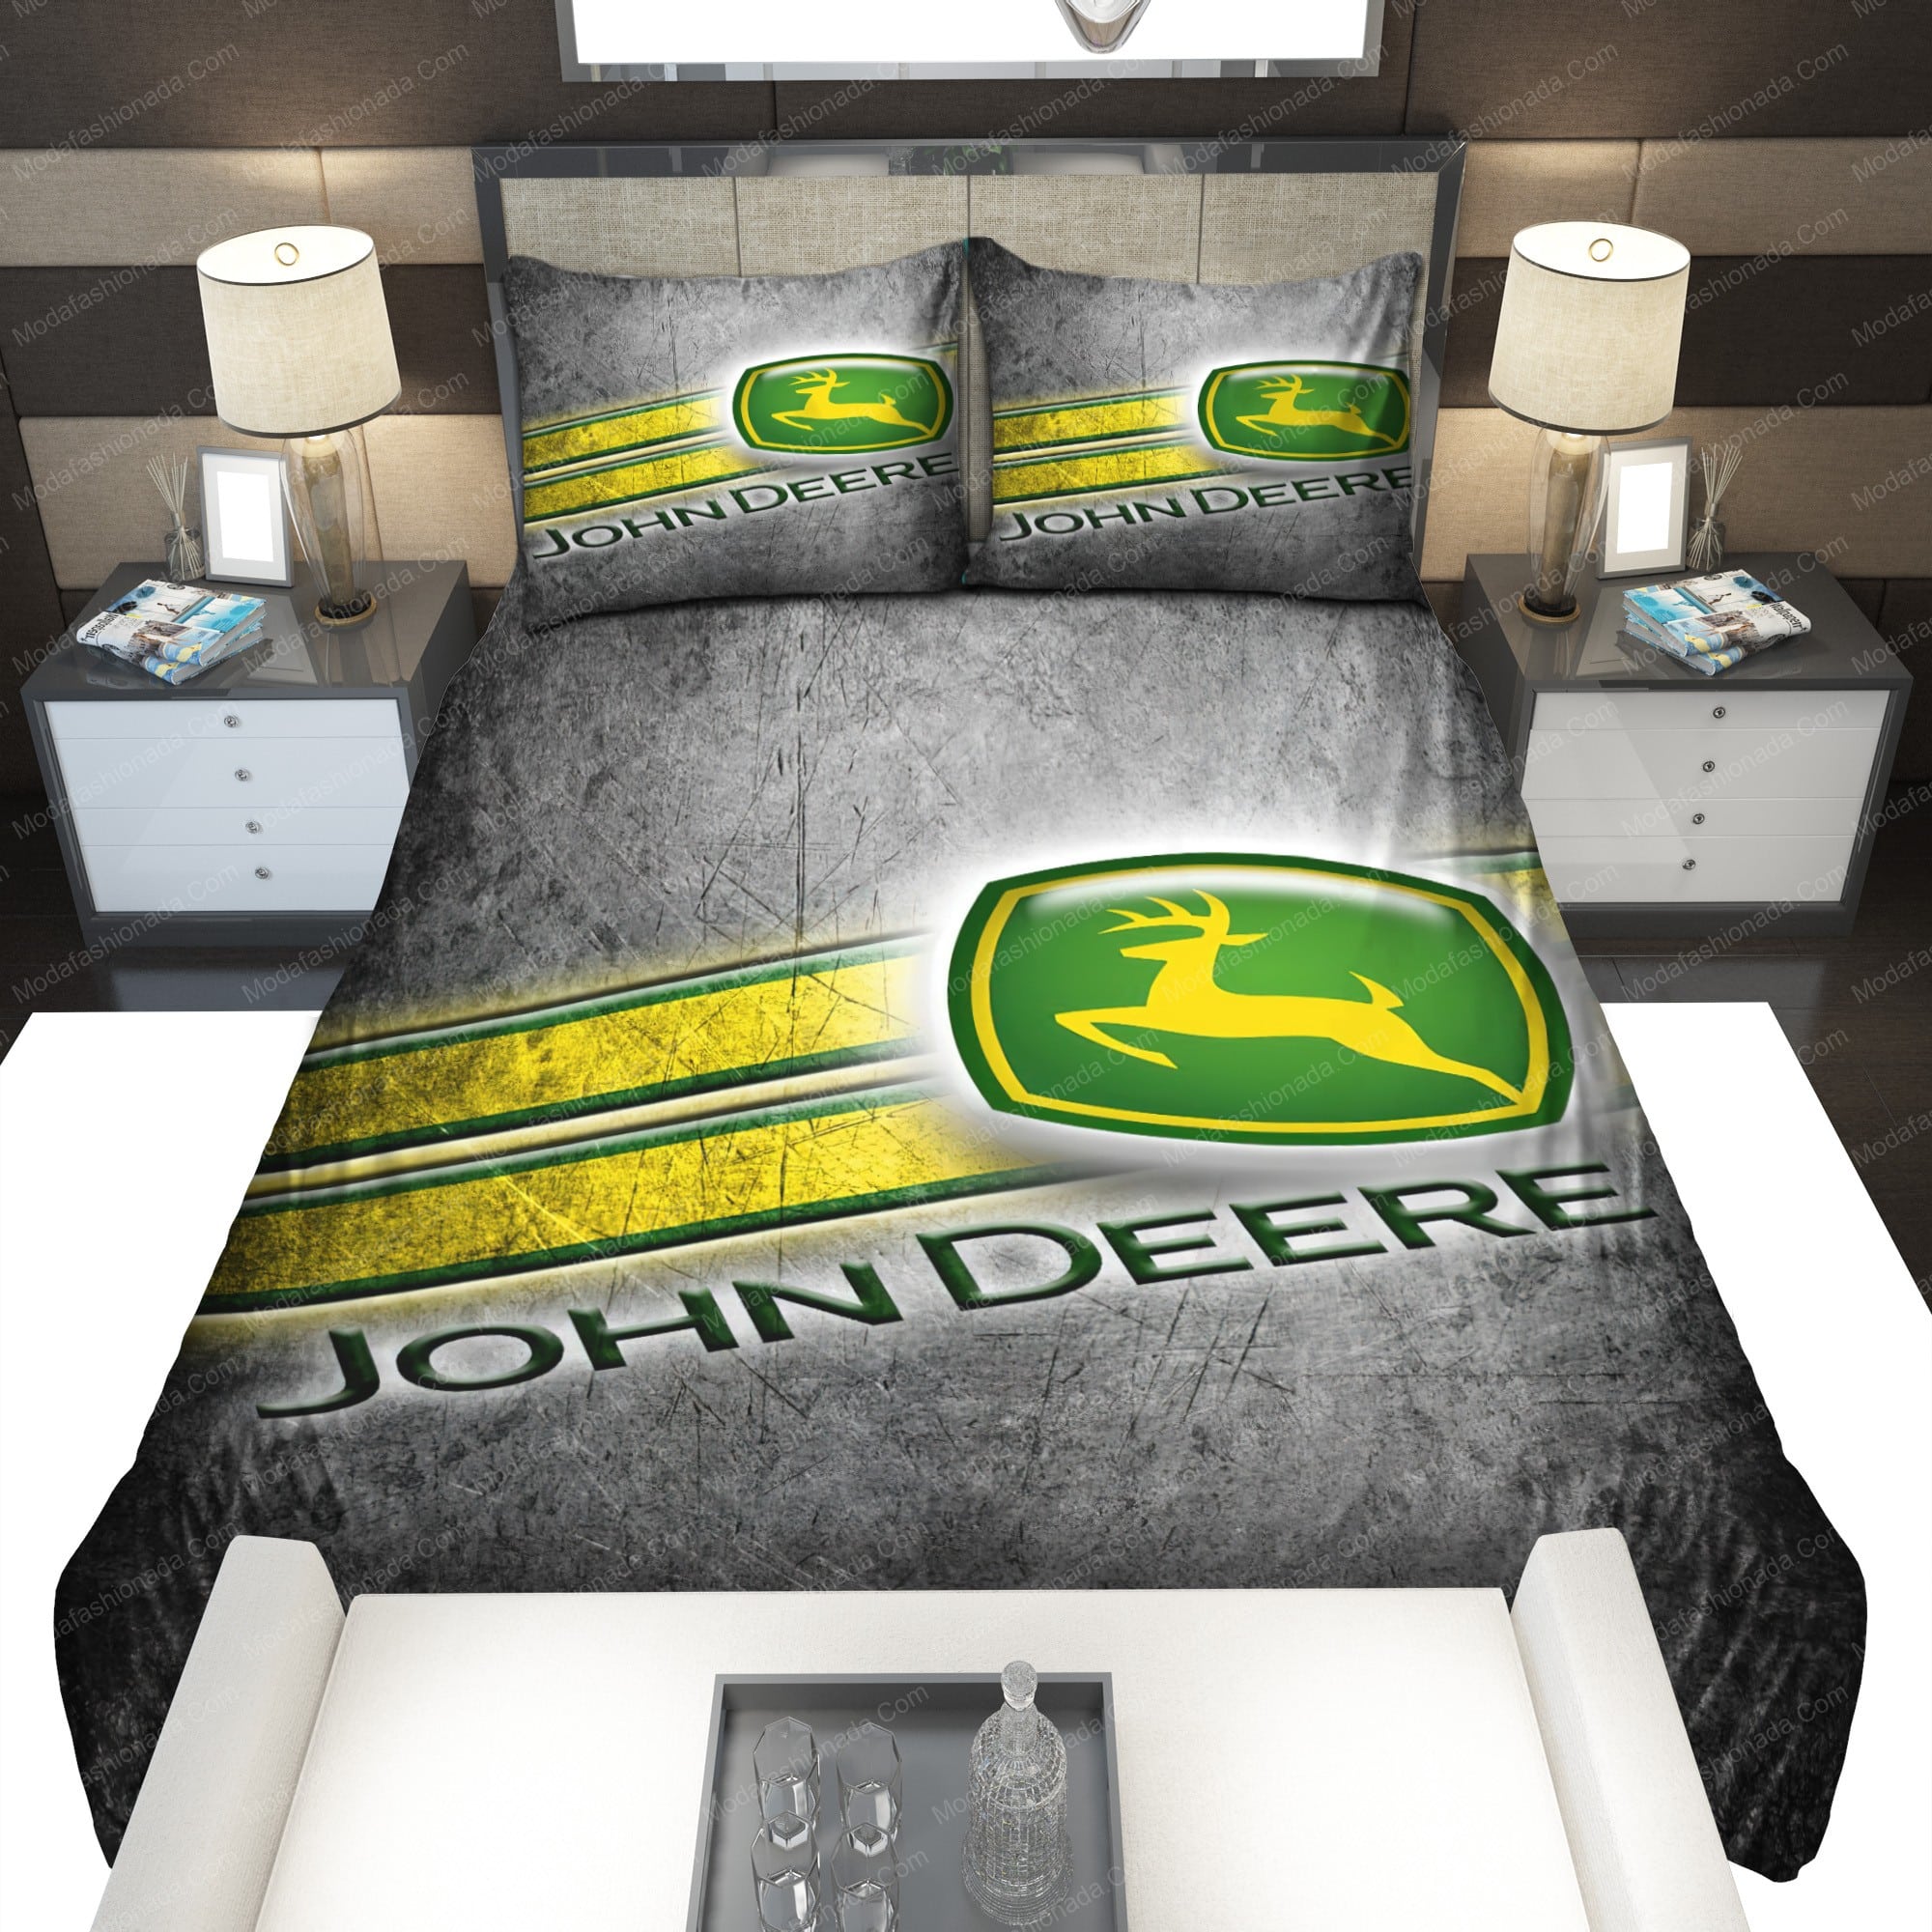 John Deere Bed Sets, Bedroom Sets, Comforter Sets, Duvet Cover, Bedspread